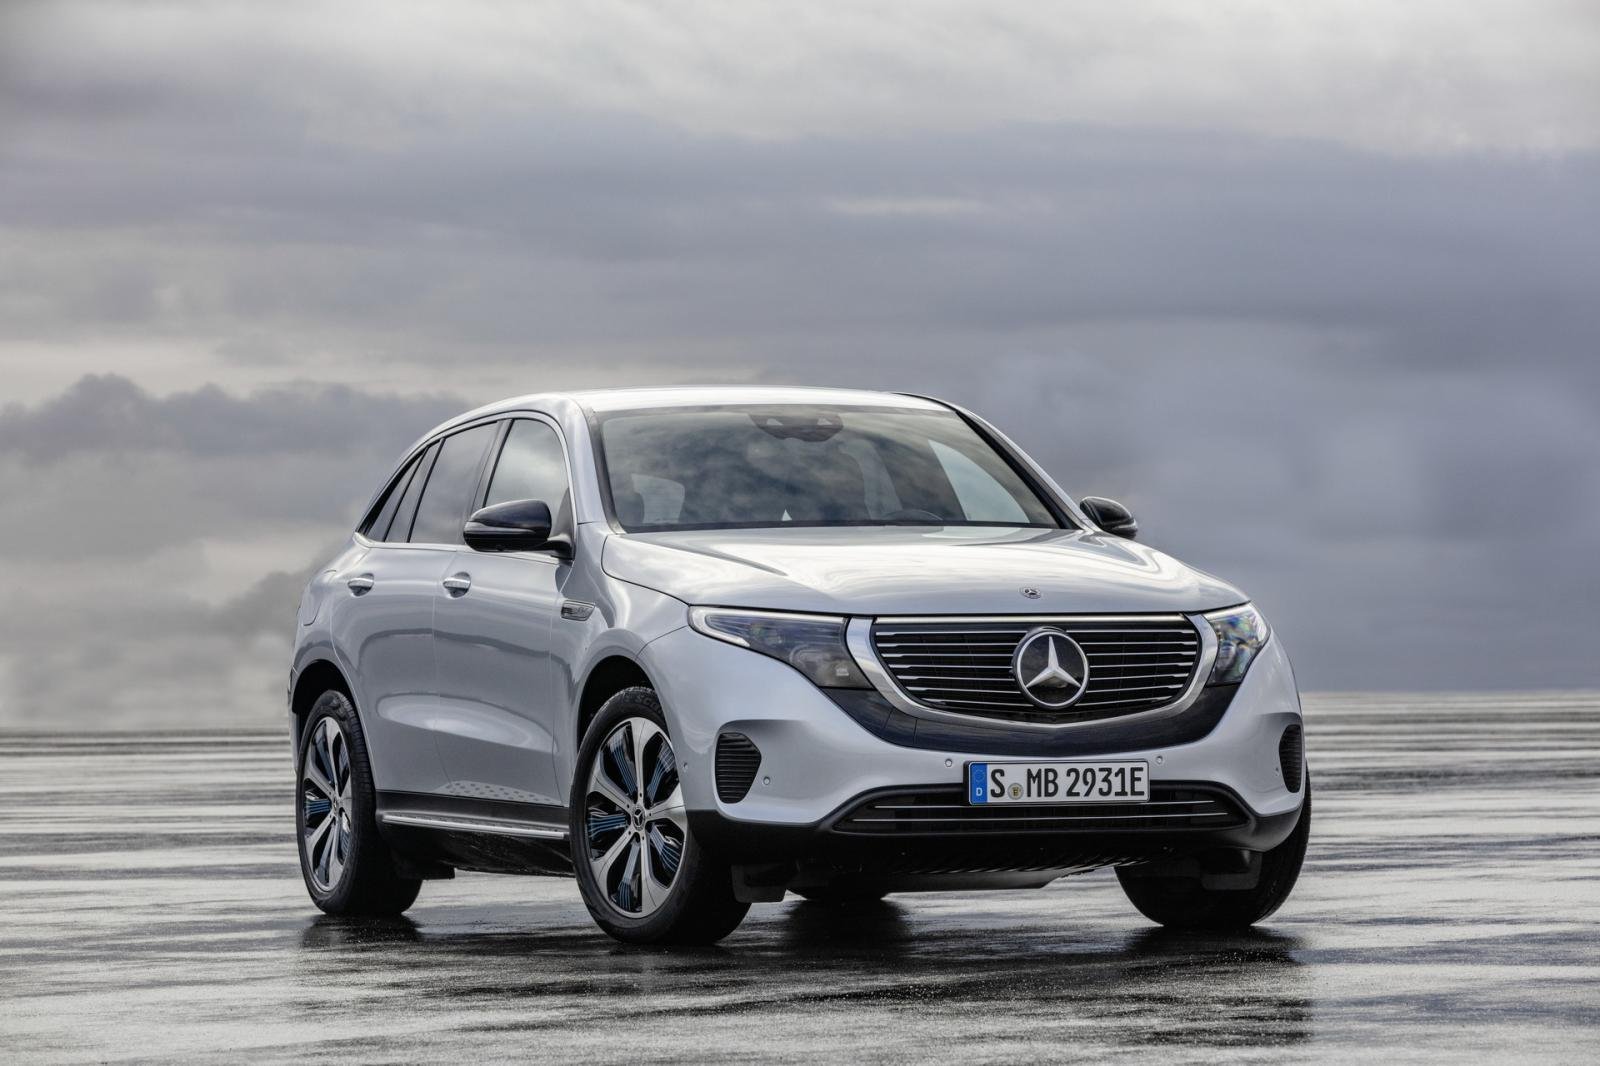 Mercedes giới thiệu thêm các mẫu xe mới giá rẻ sắp tới